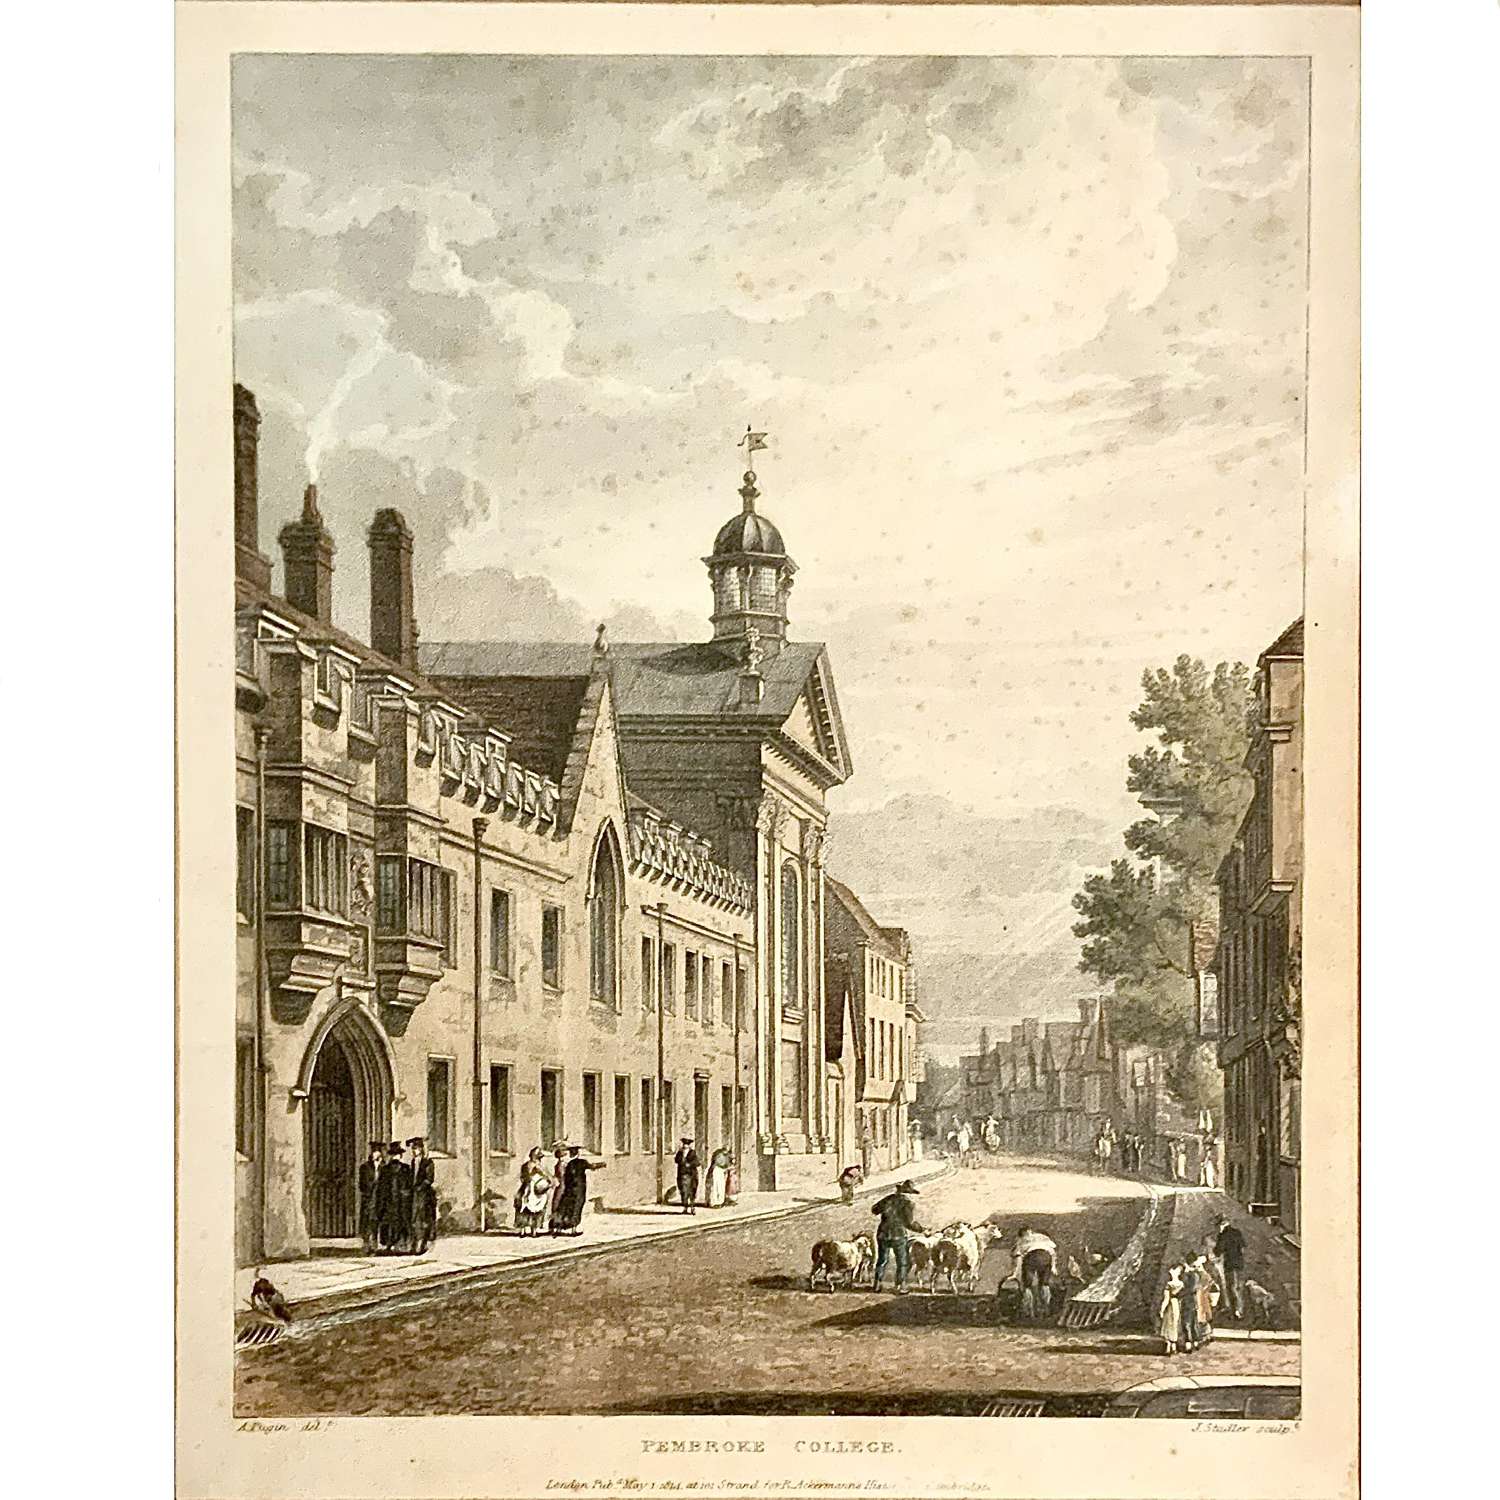 “Pembroke College Cambridge” after Augustus Pugin published Ackermann